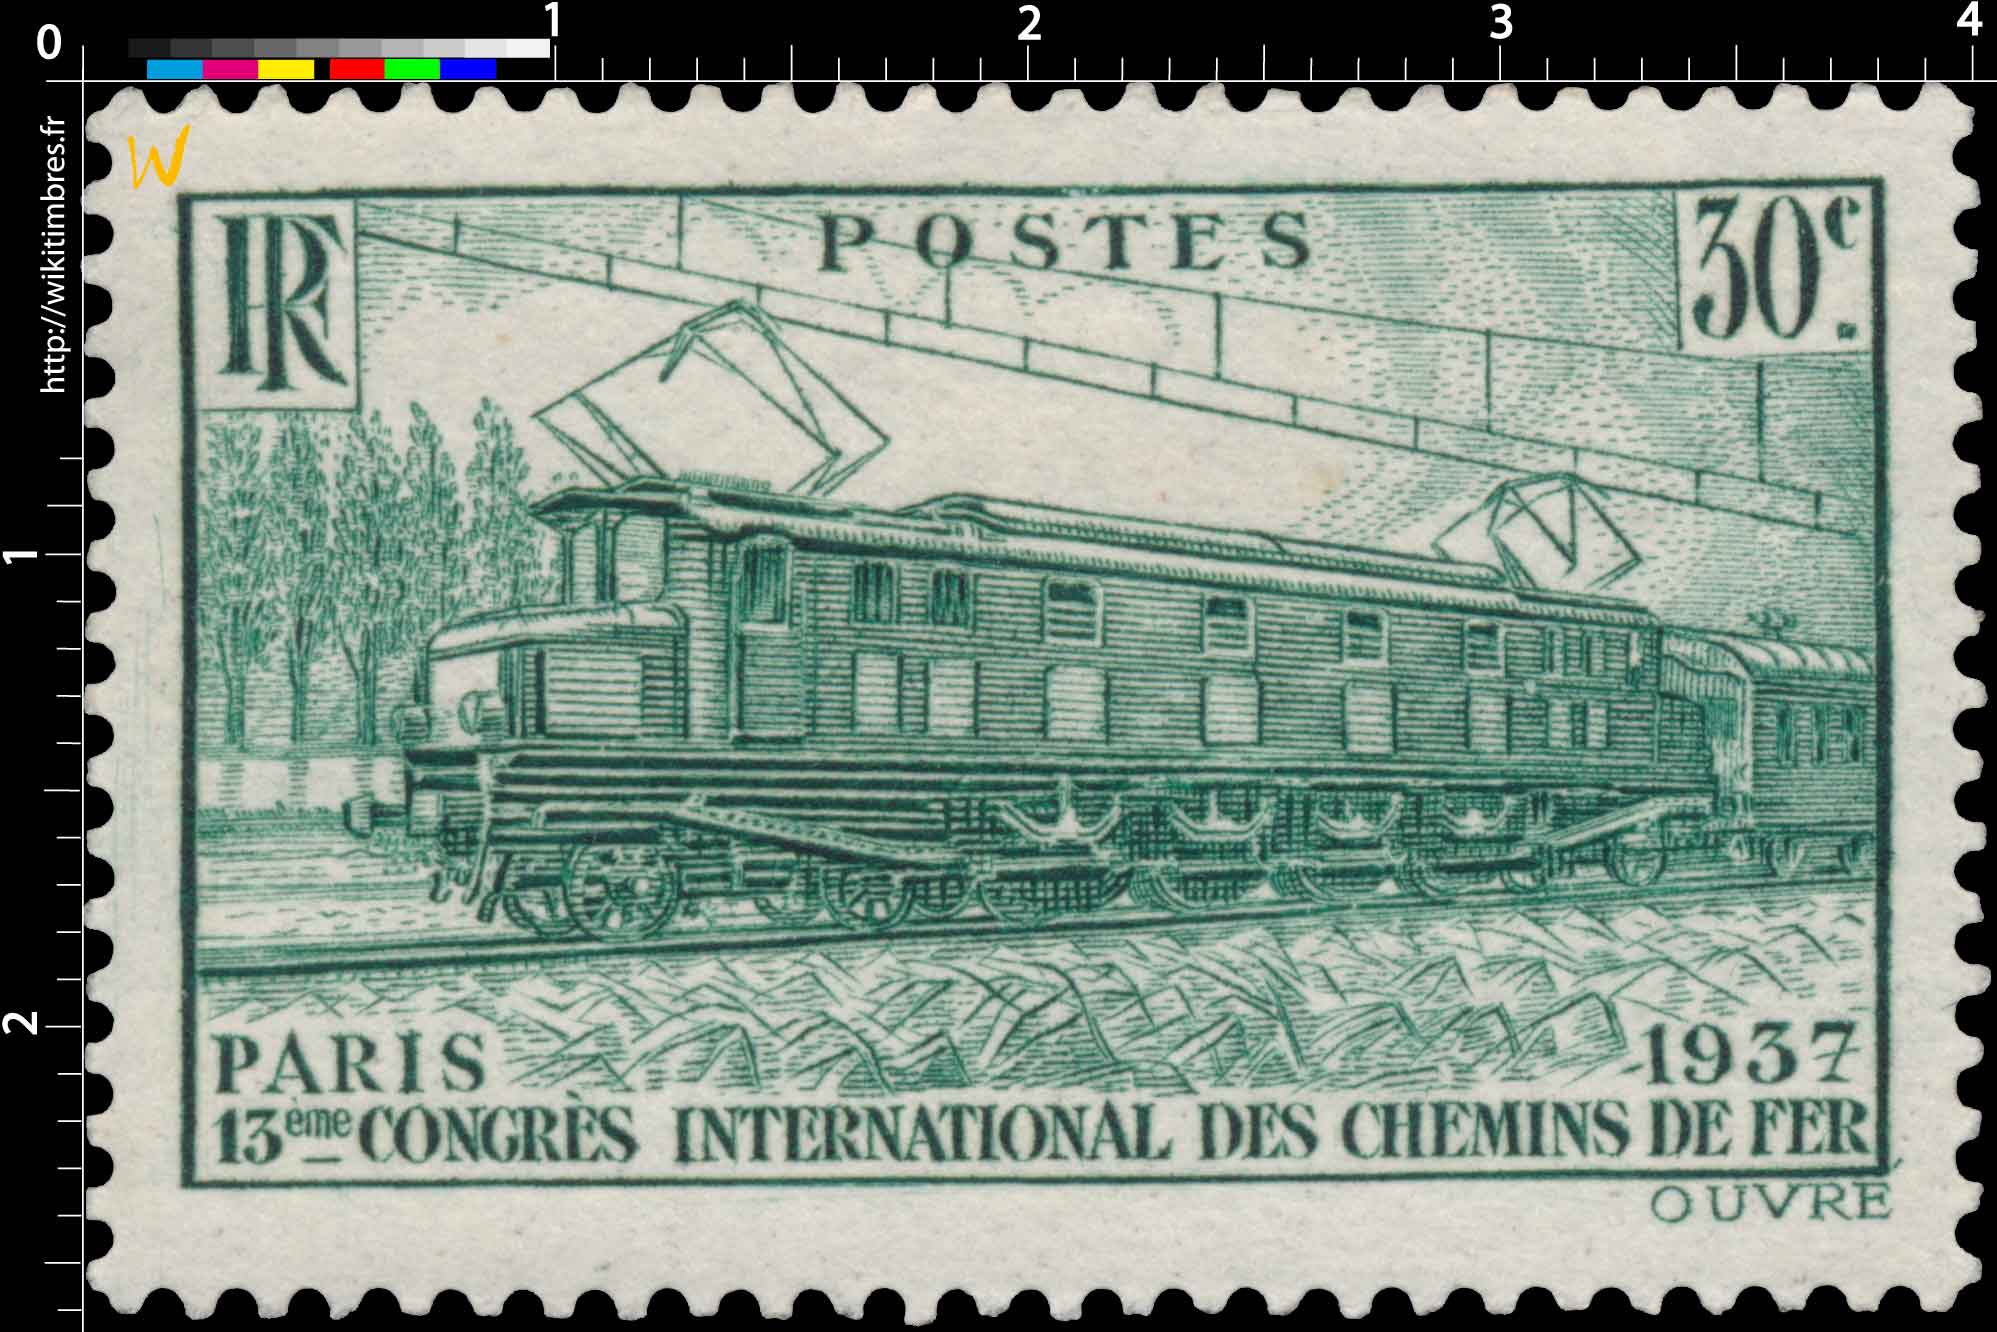 PARIS 1937 13ème CONGRÈS INTERNATIONAL DES CHEMINS DE FER